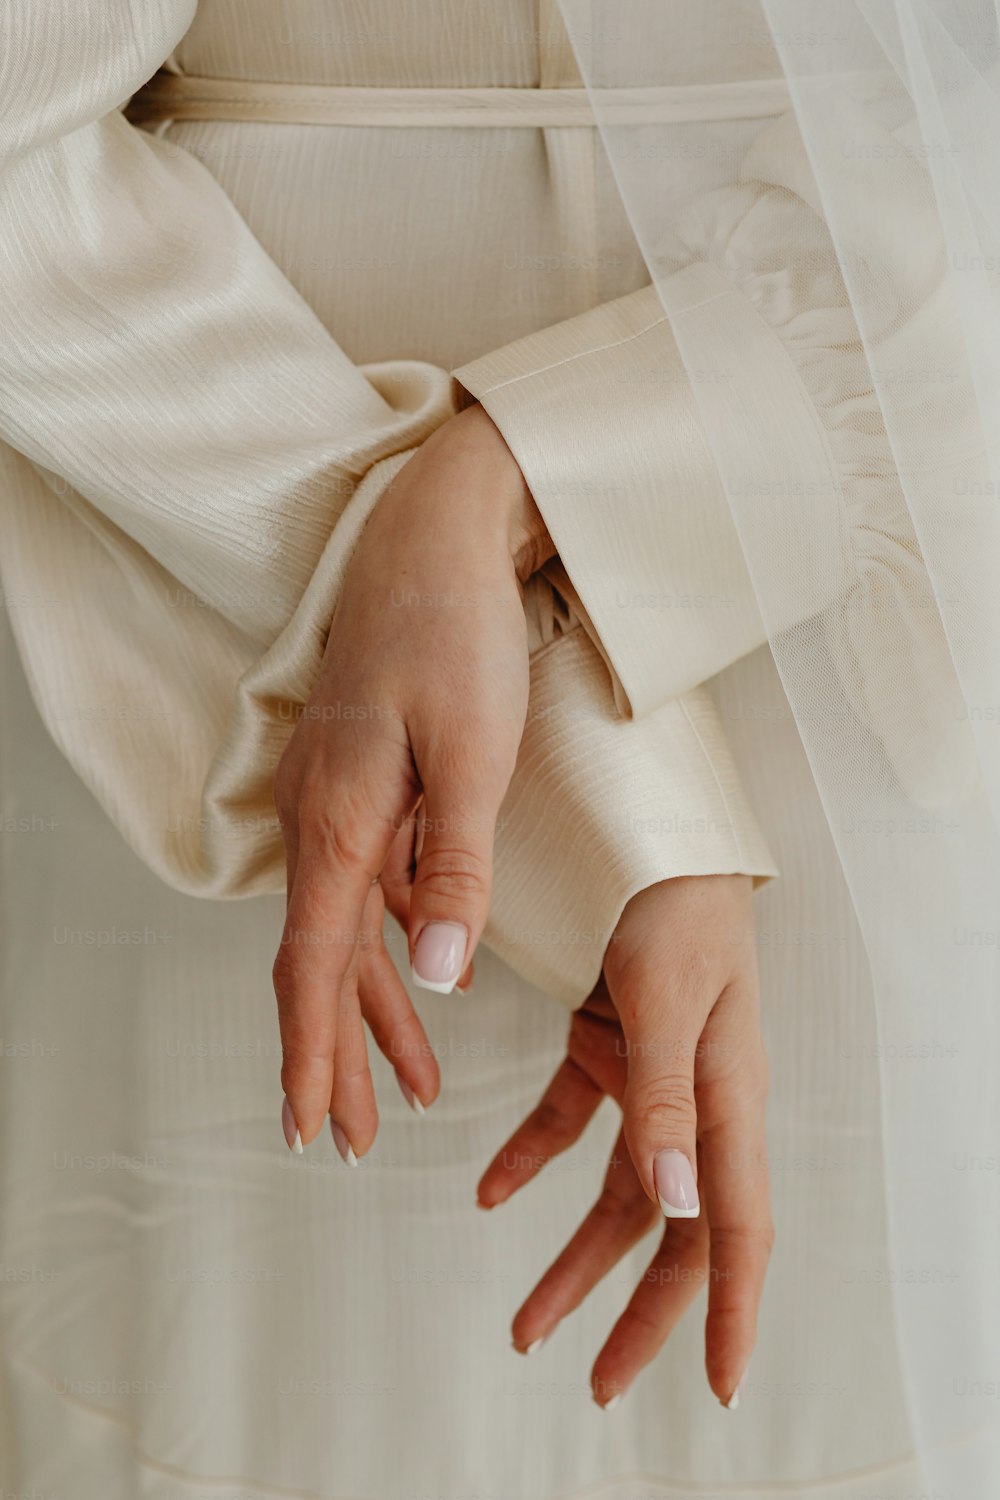 um close up das mãos de uma pessoa usando um vestido de noiva